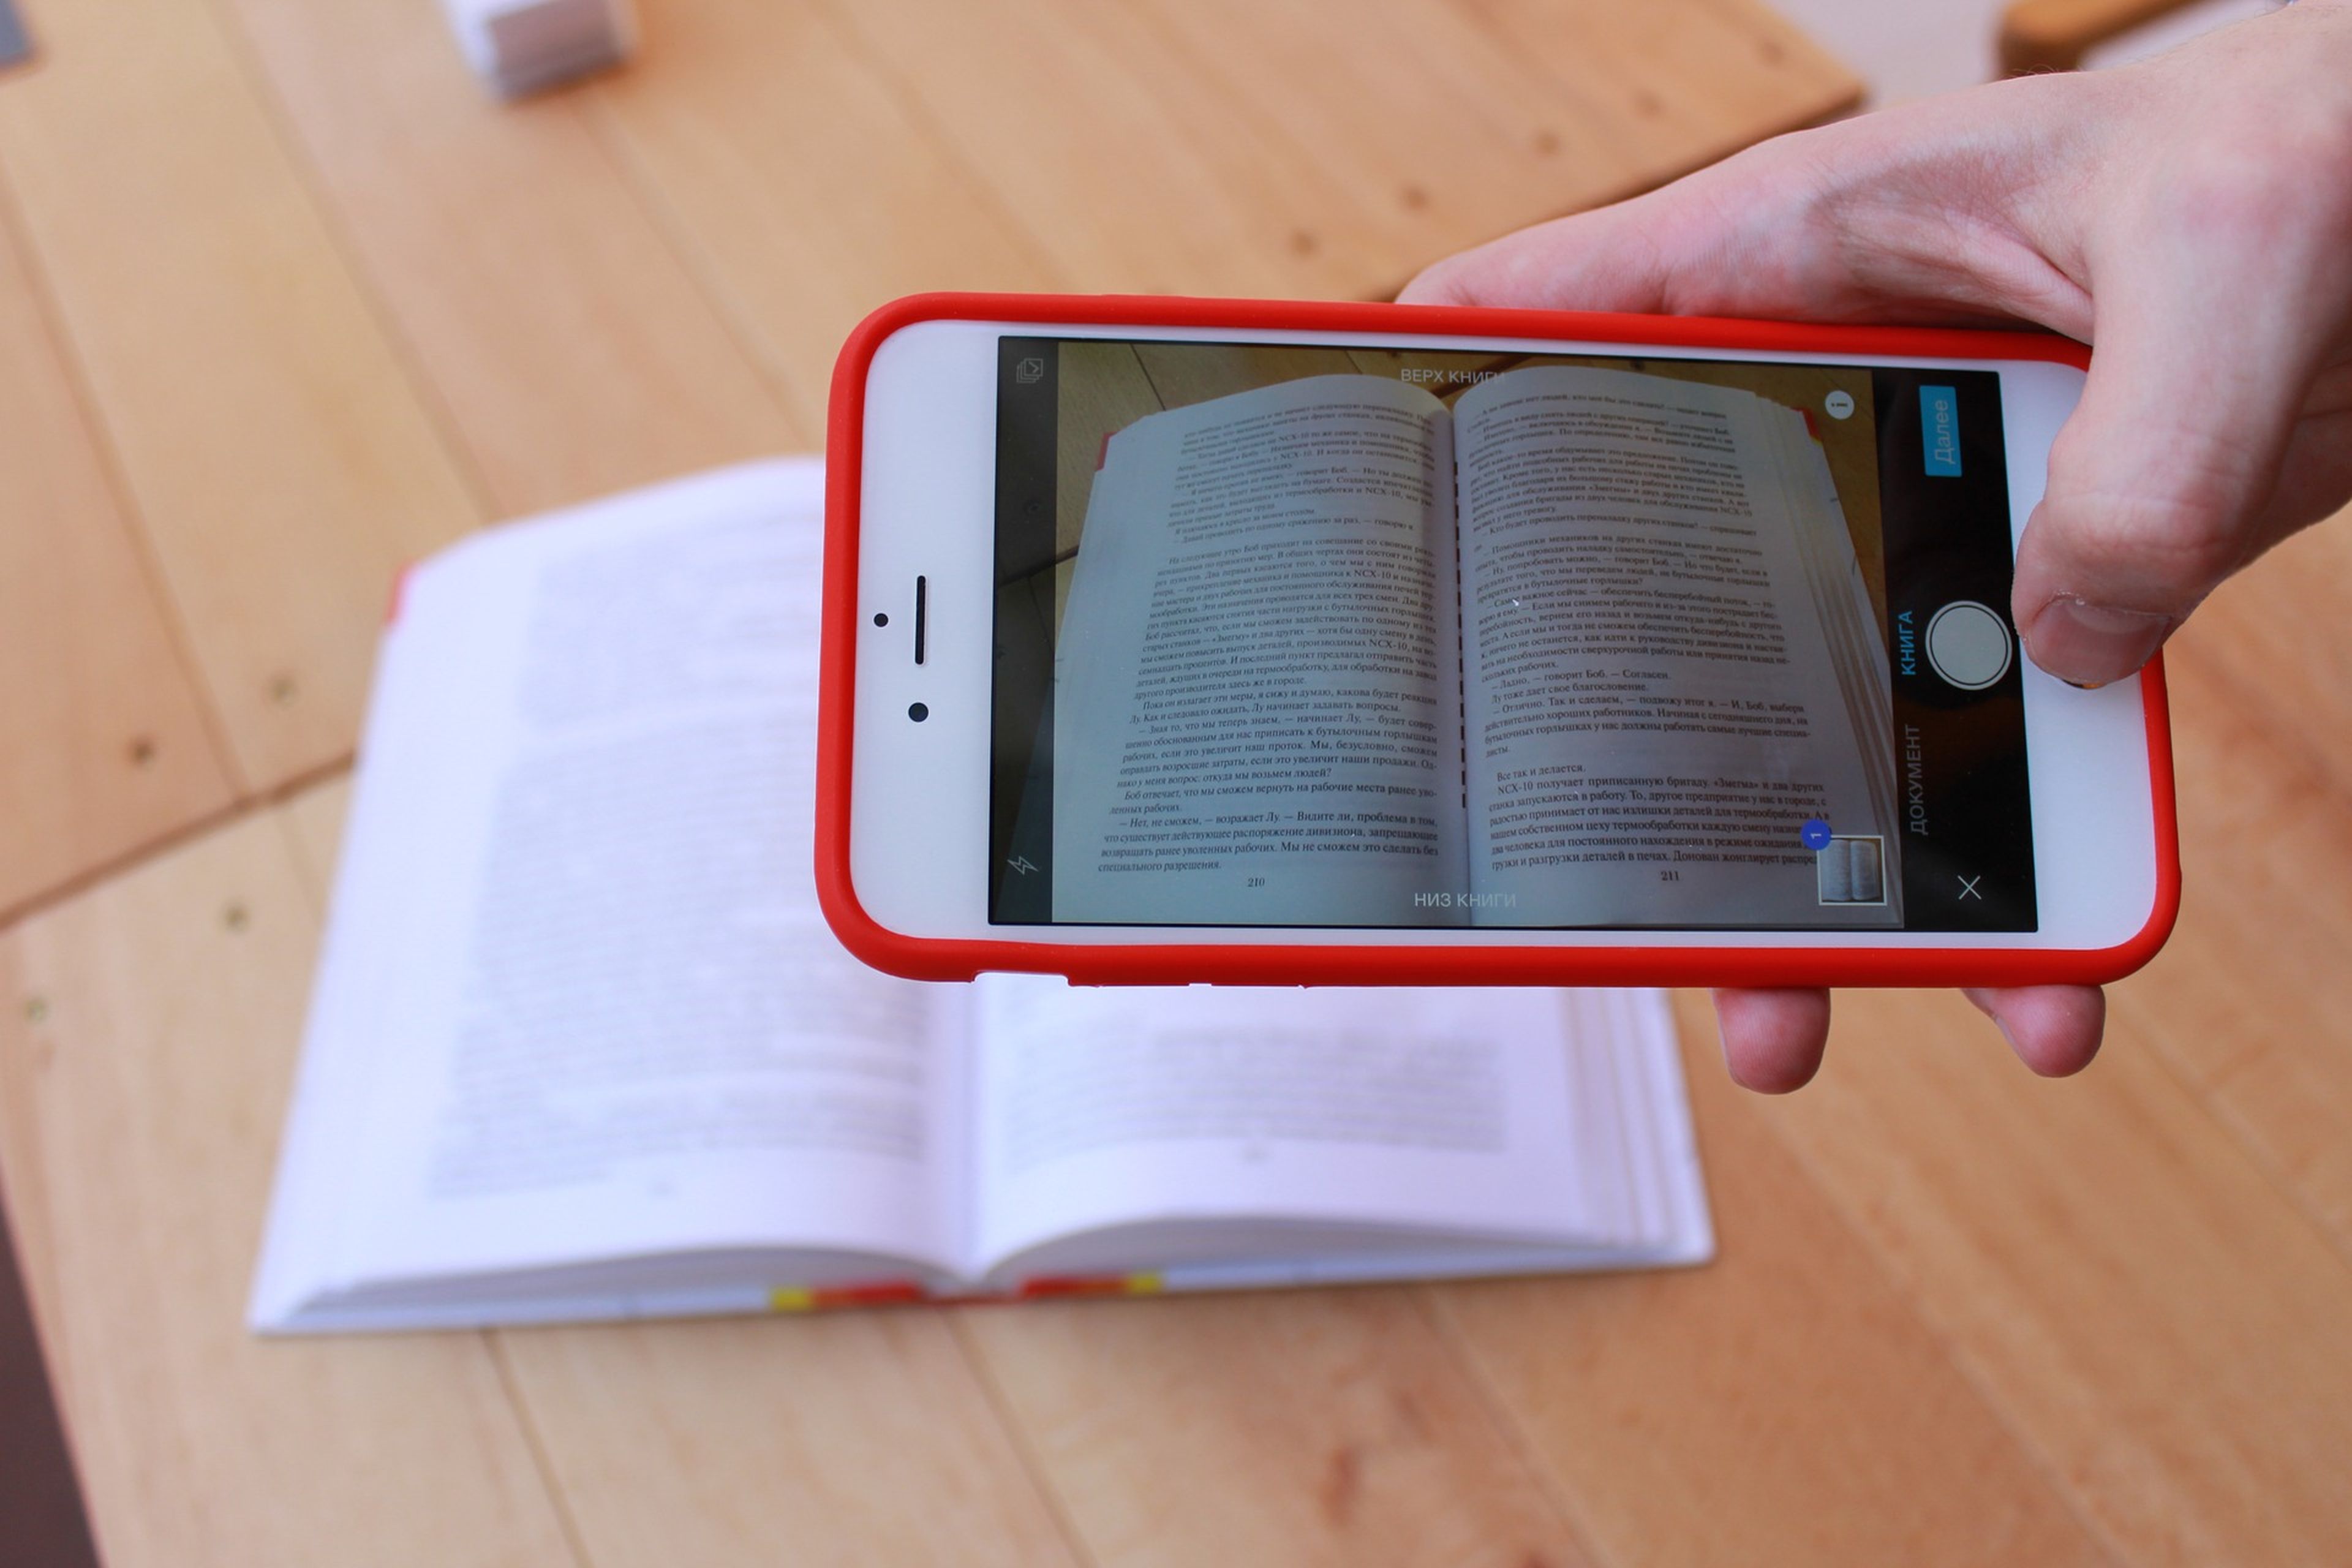 Escanear un libro con el móvil